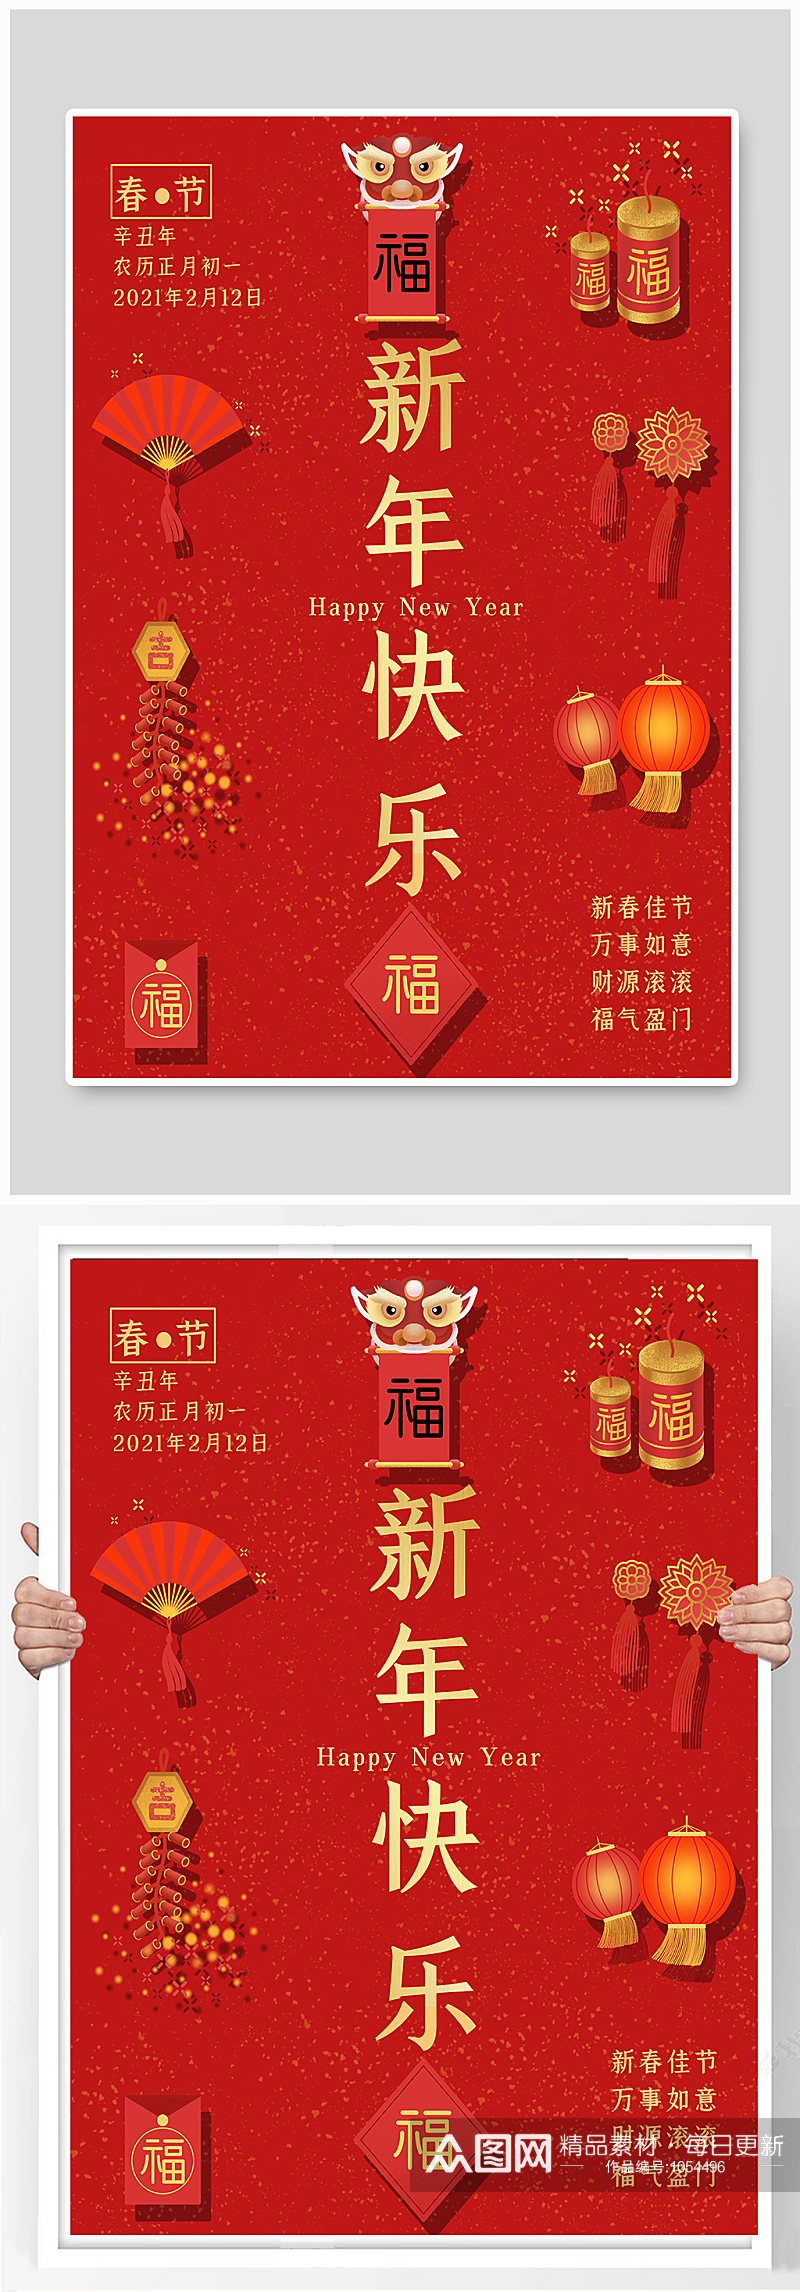 新年快乐春节除夕过年红色拜年节日海报素材